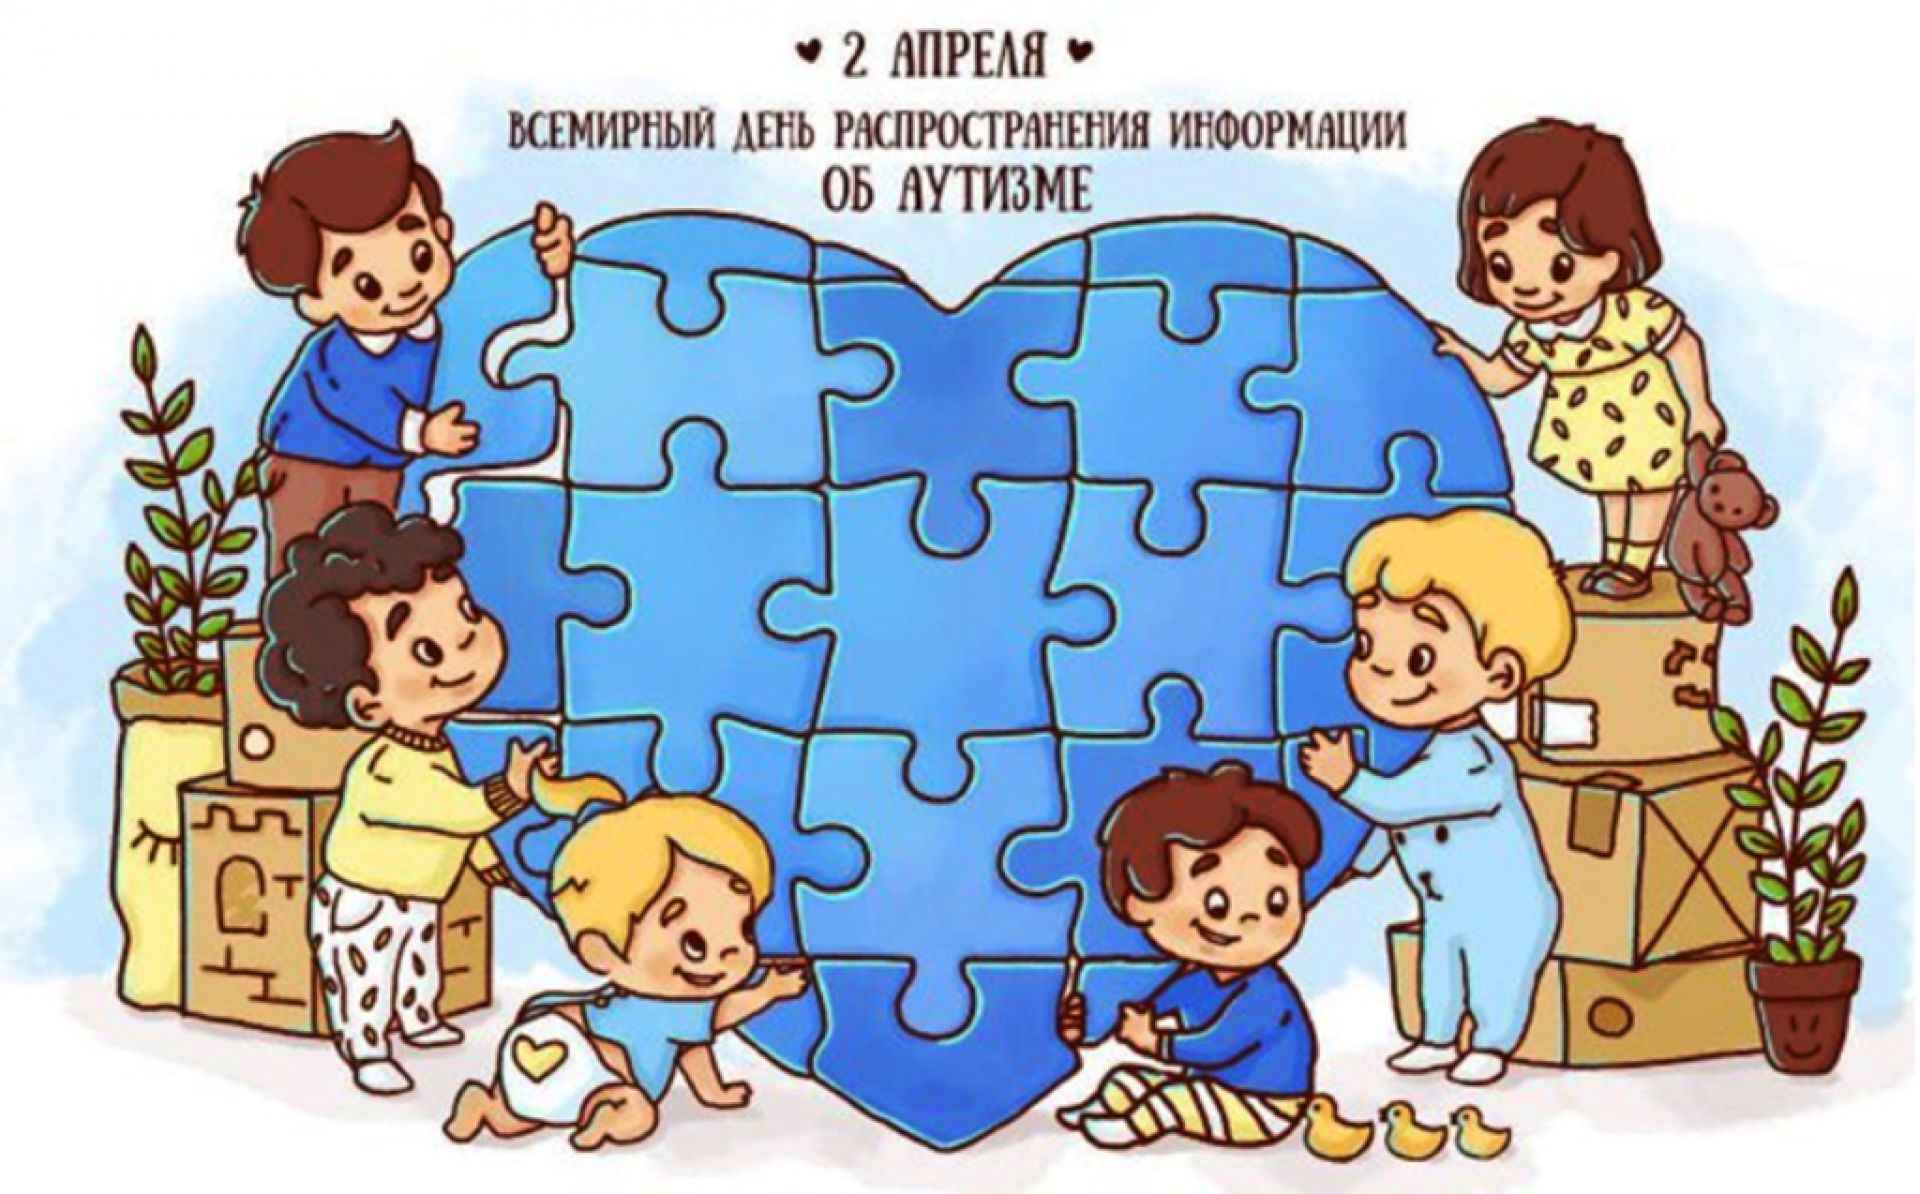 Всемирный день аутизма 2 апреля